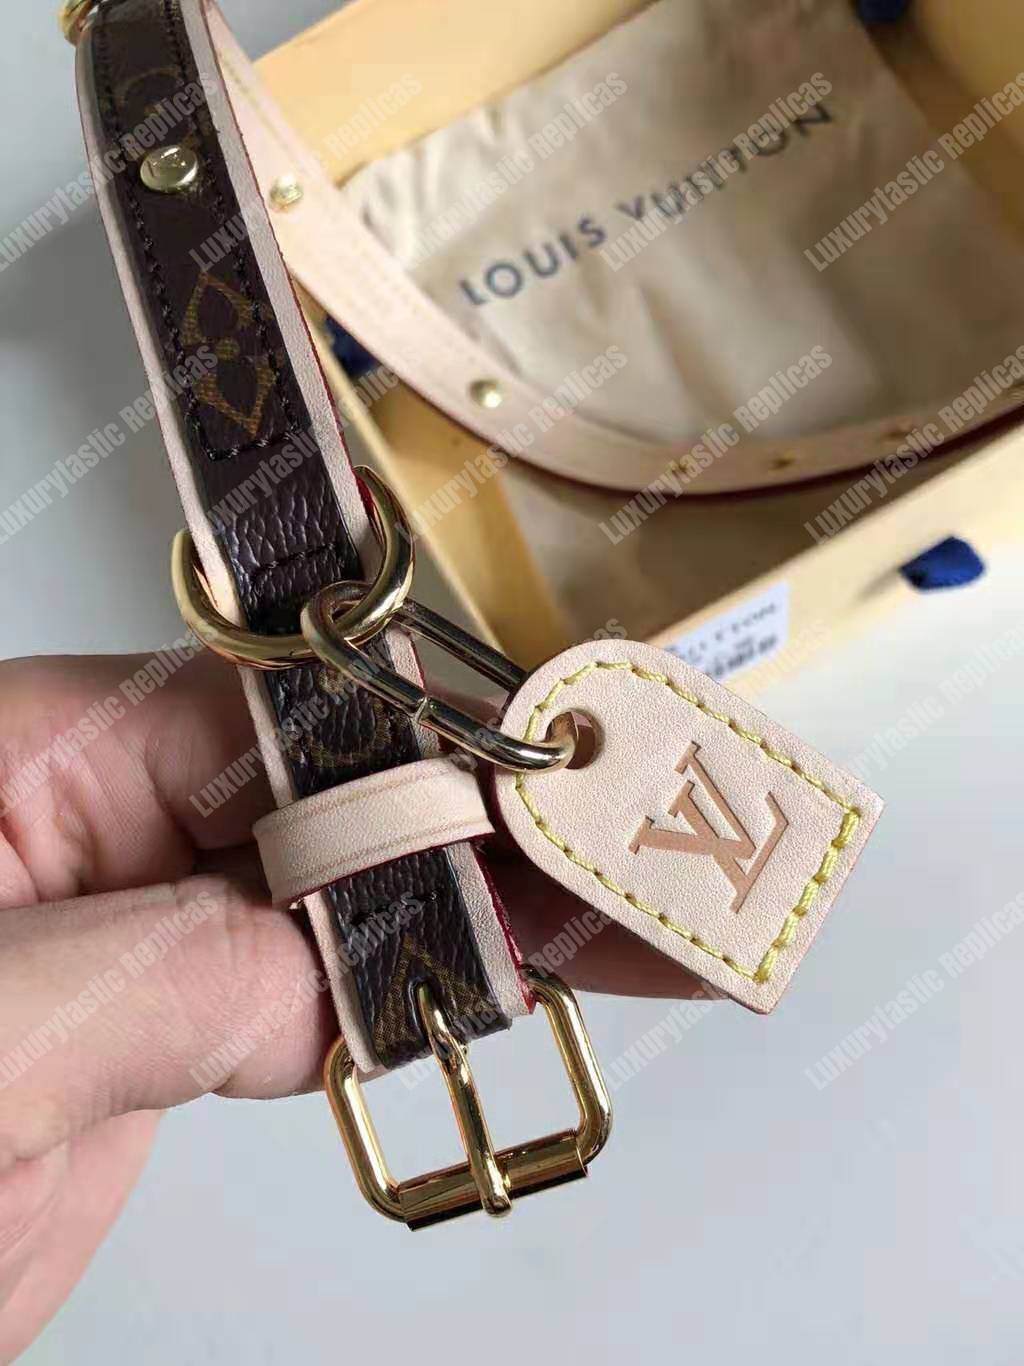 Louis Vuitton Collare Cane